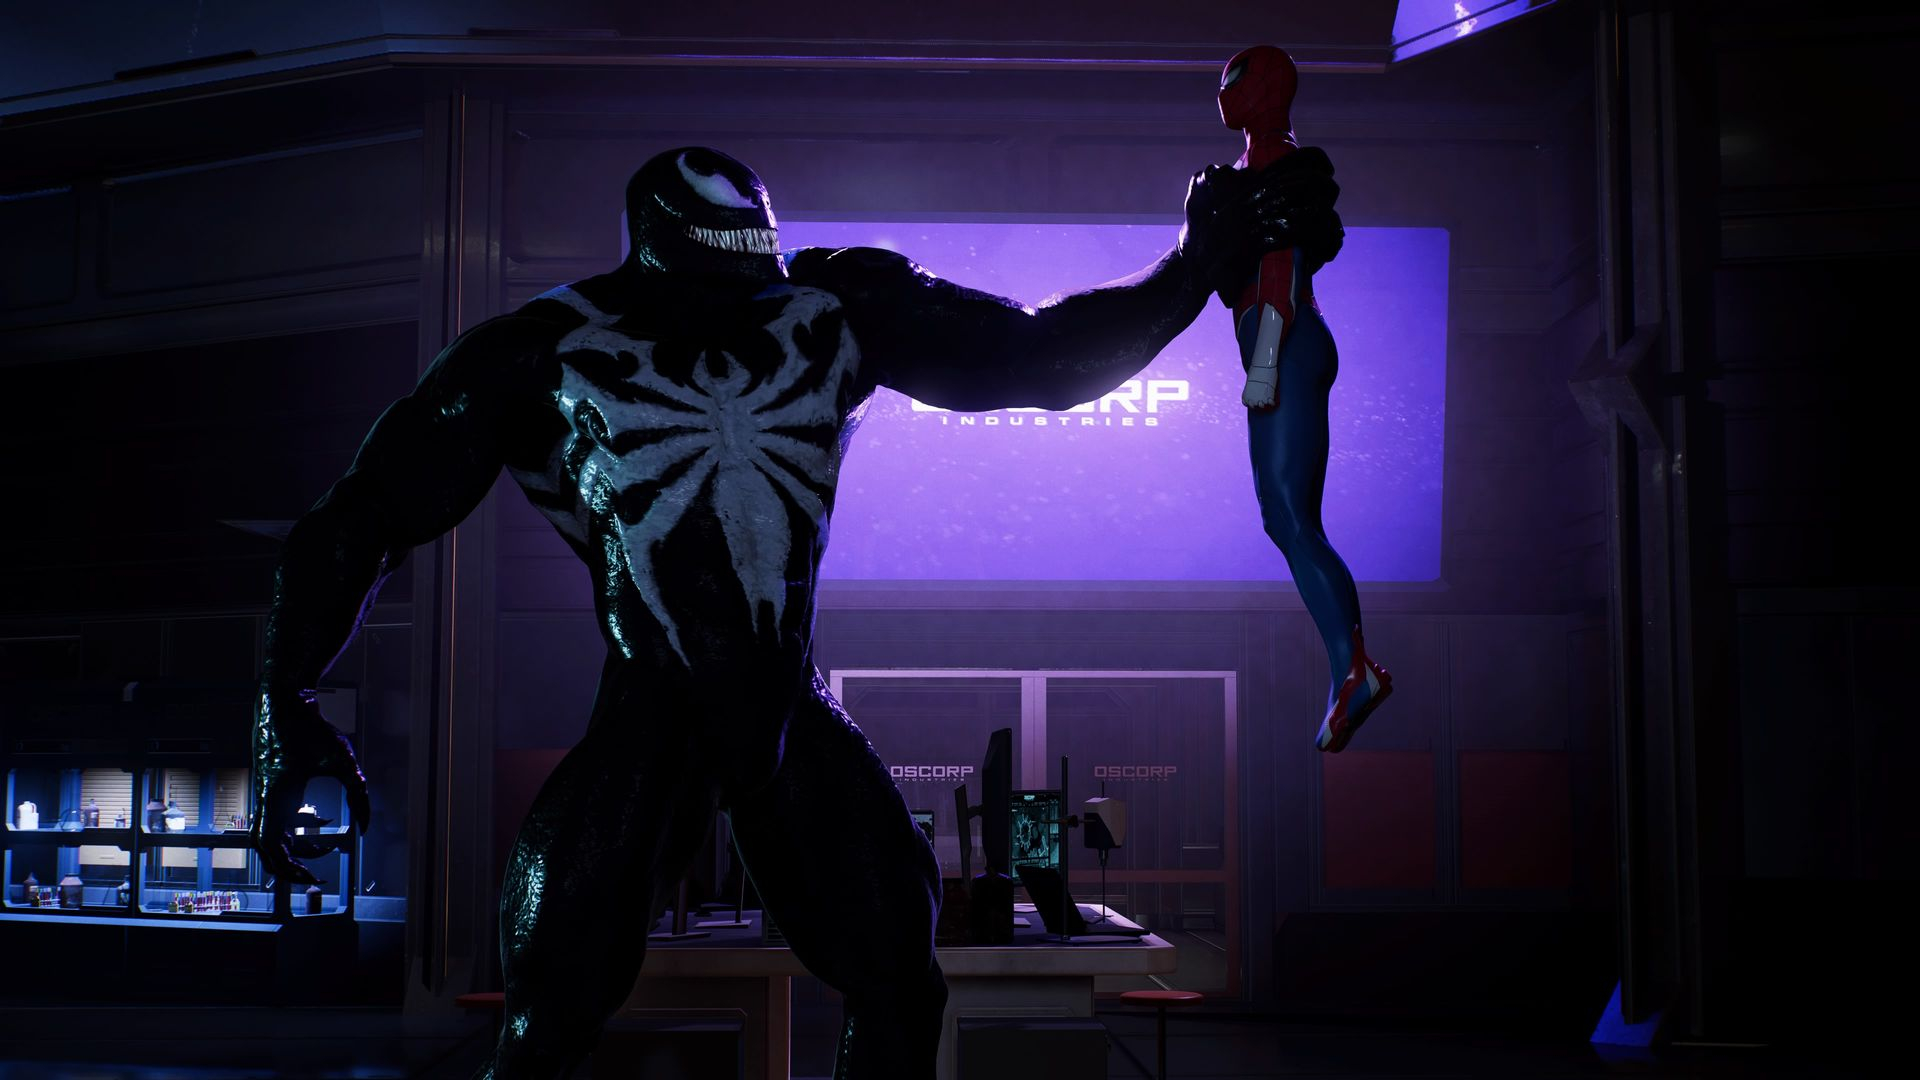 Как быстро устанавливать моды для Marvel's Spider-Man на ПК